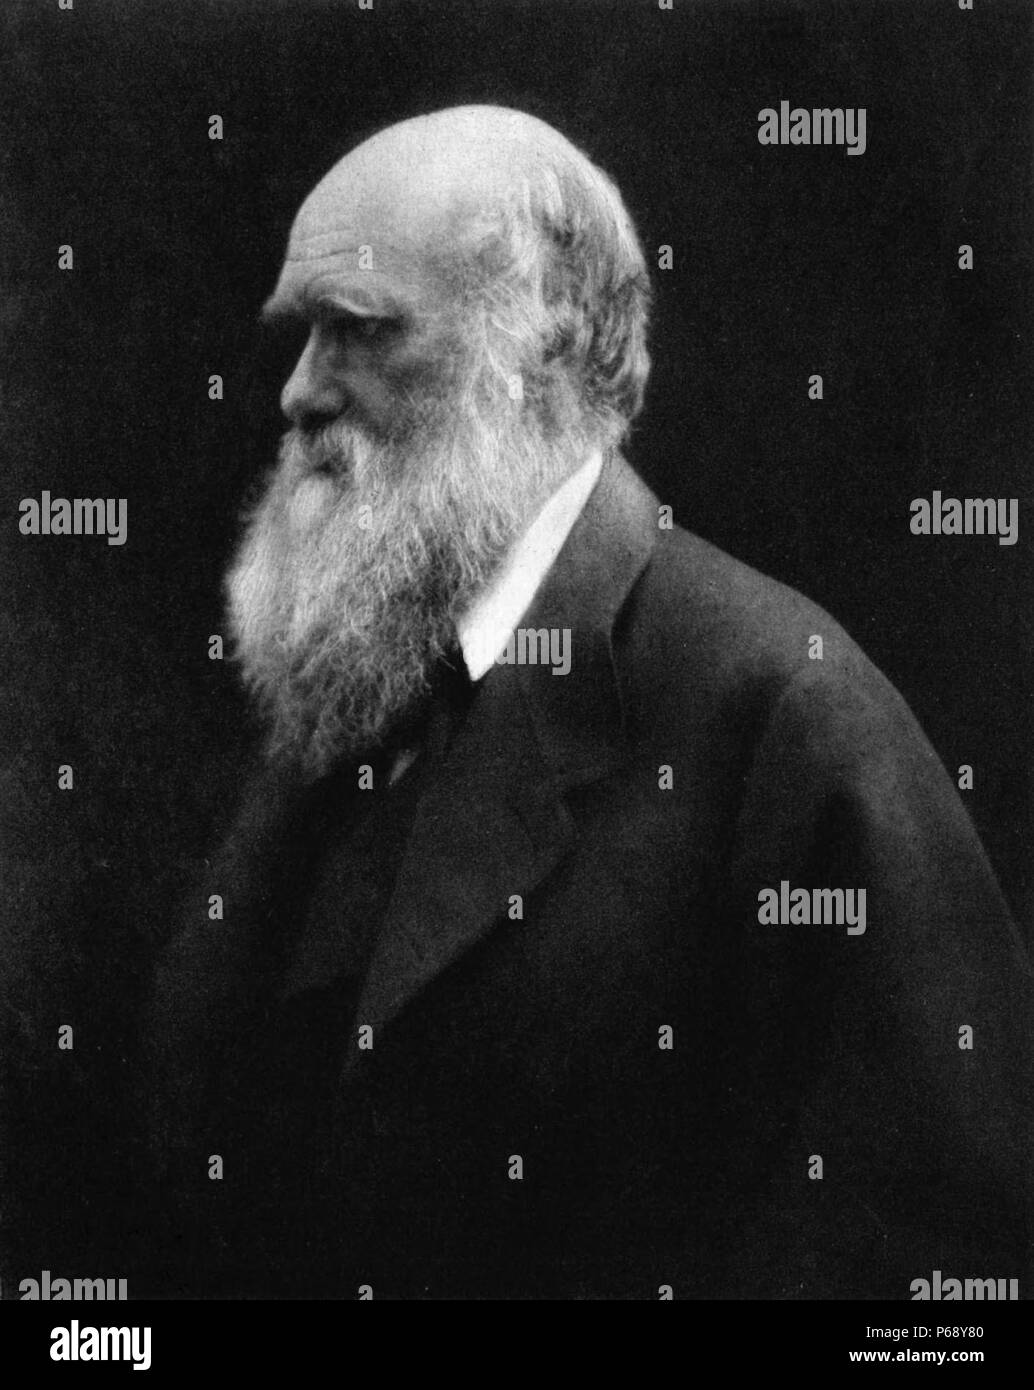 Fotografia di Robert Charles Darwin (1809-1882) naturalista inglese e geologo, più noto per i suoi contributi alla teoria evolutiva. Fotografata da Julia Margaret Cameron. Datata 1868 Foto Stock